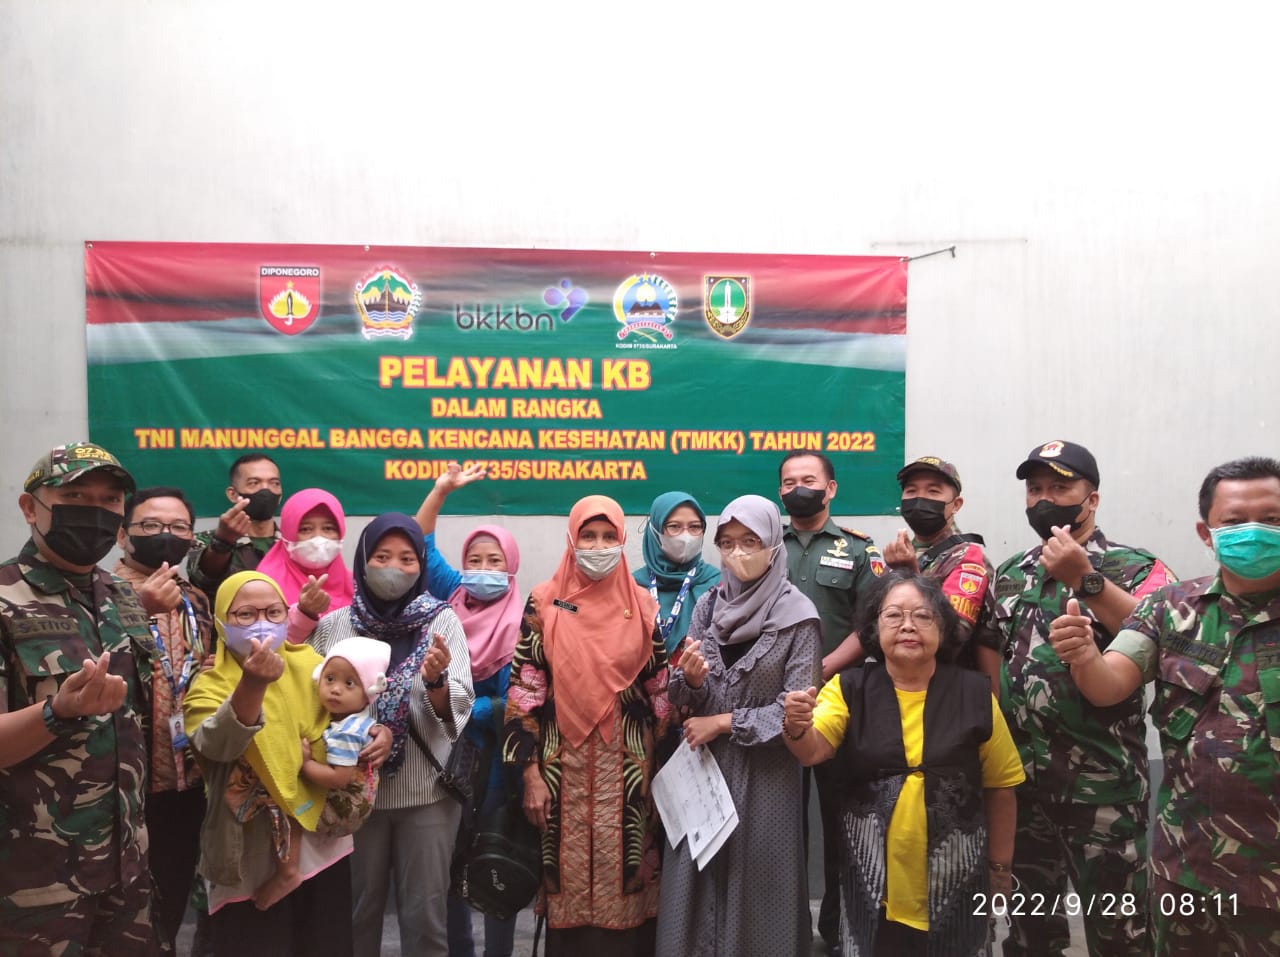 Dukung Program TNI Manunggal Bangga Kencana Kesehatan, Pers Koramil 03/Serengan Dampingi Warganya Ikuti KB